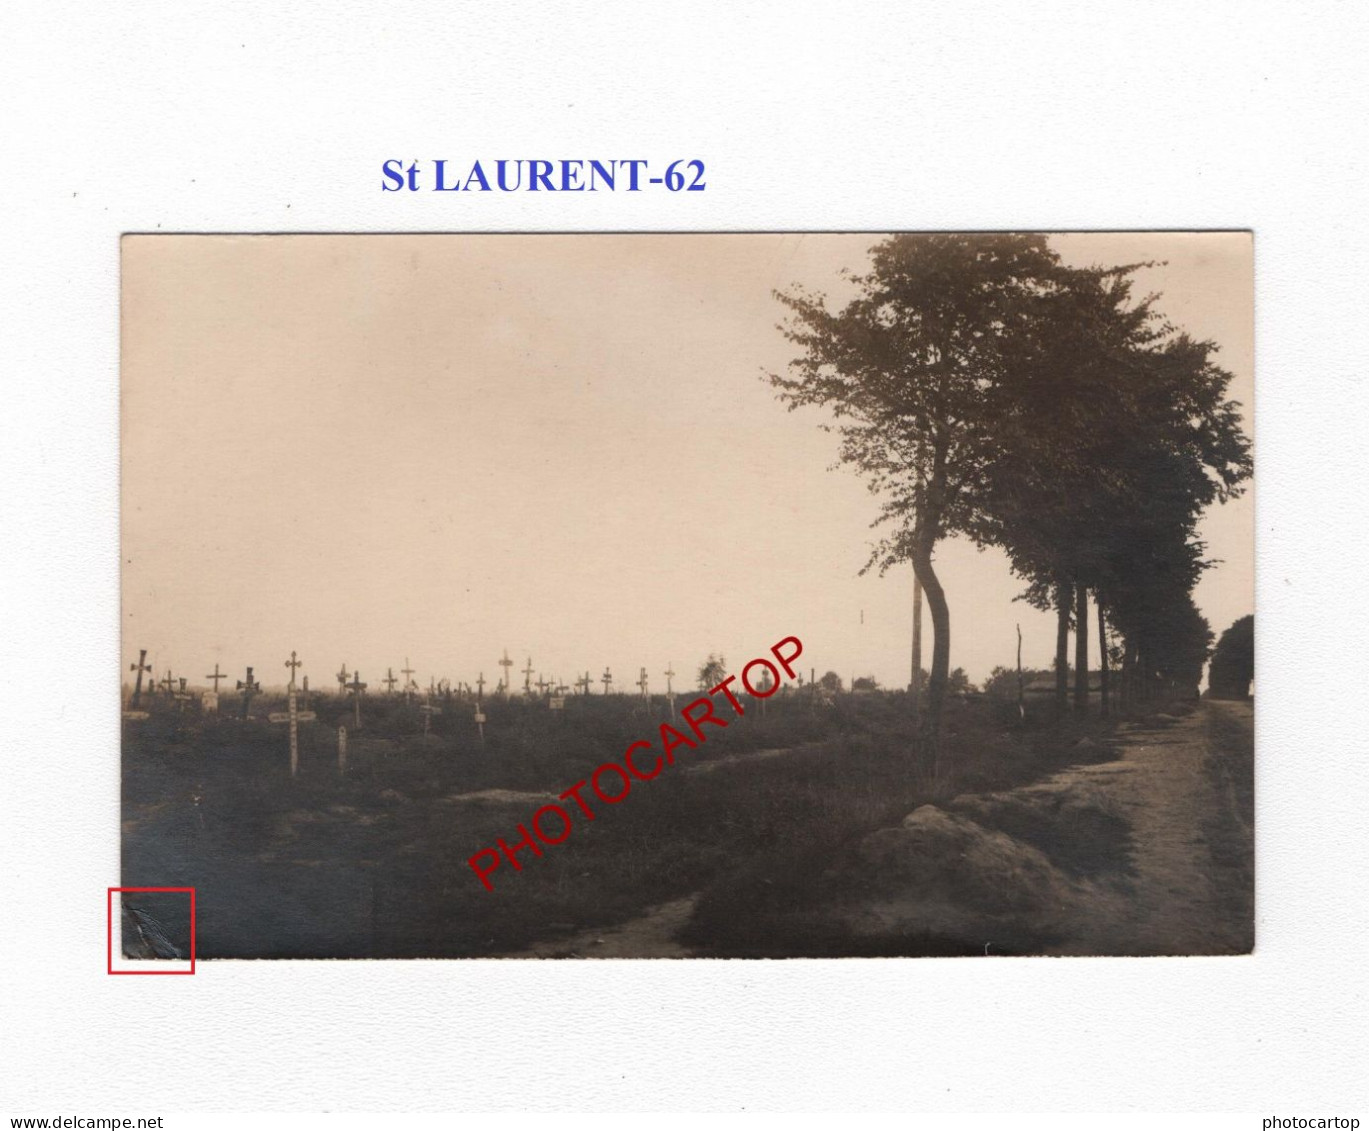 St LAURENT-62-Cimetiere-Tombes-CARTE PHOTO Allemande-GUERRE 14-18-1 WK-MILITARIA- - Oorlogsbegraafplaatsen